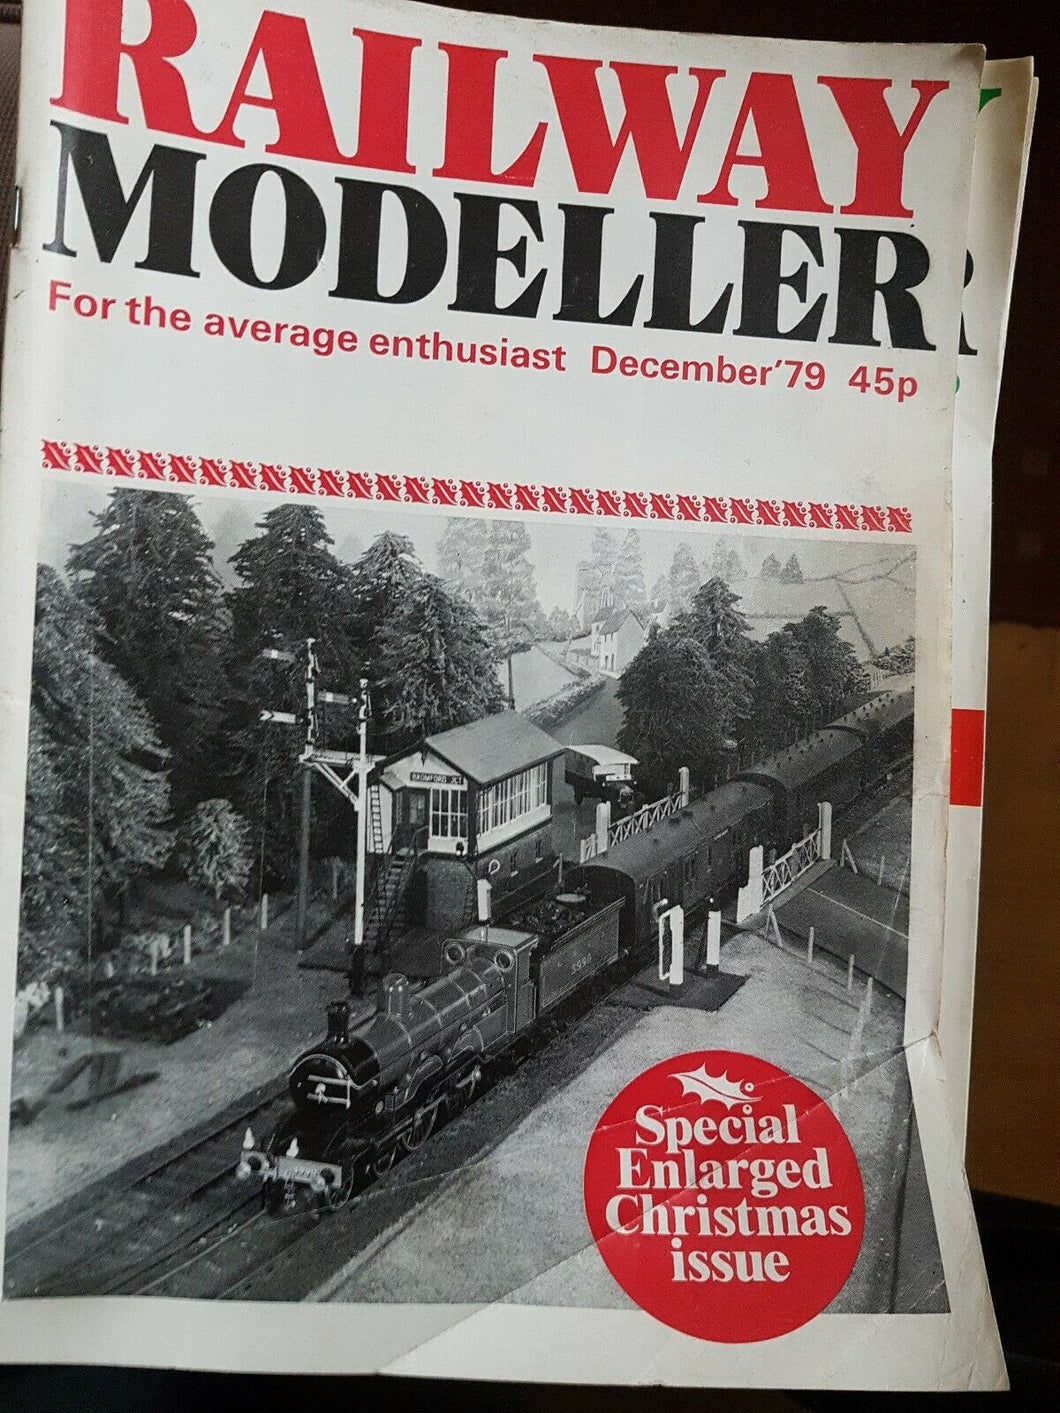 Railway modeller December 1979